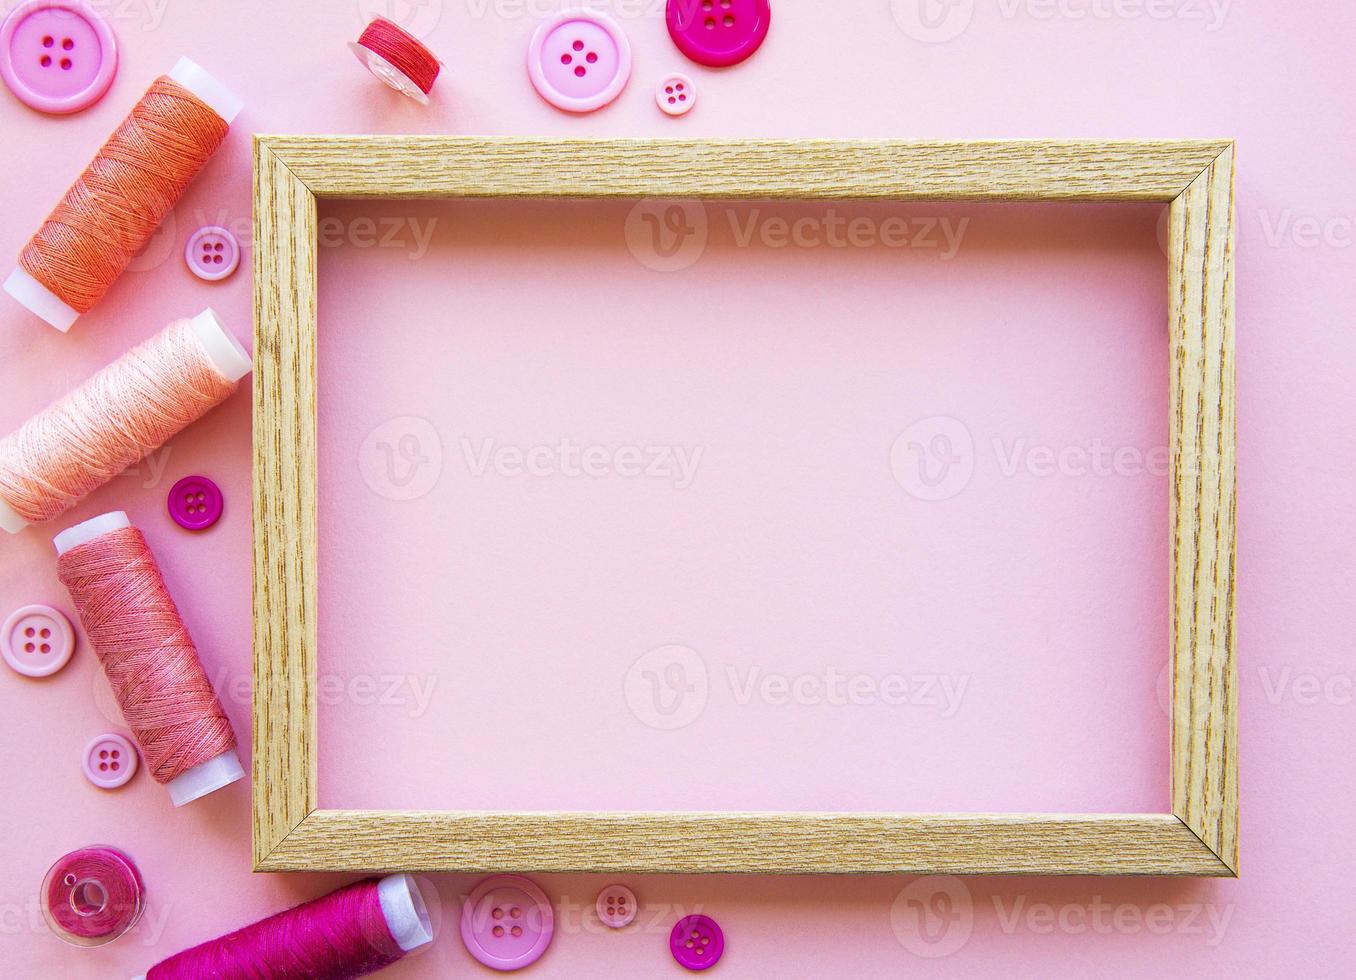 trådrullar och knappar i rosa toner på en rosa bakgrund foto